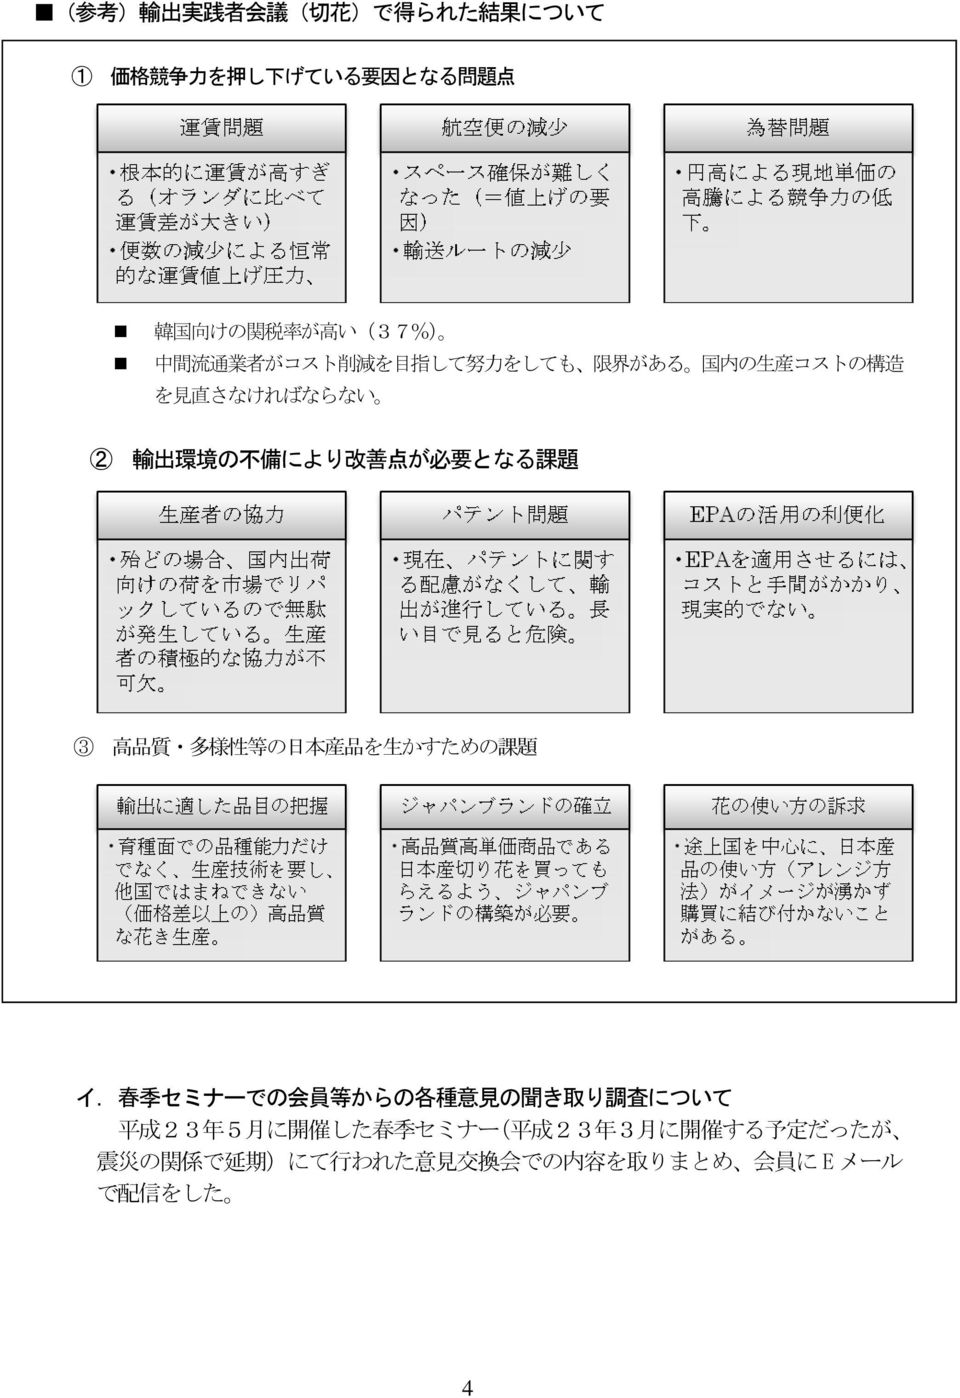 題 3 高 品 質 多 様 性 等 の 日 本 産 品 を 生 かすための 課 題 イ.